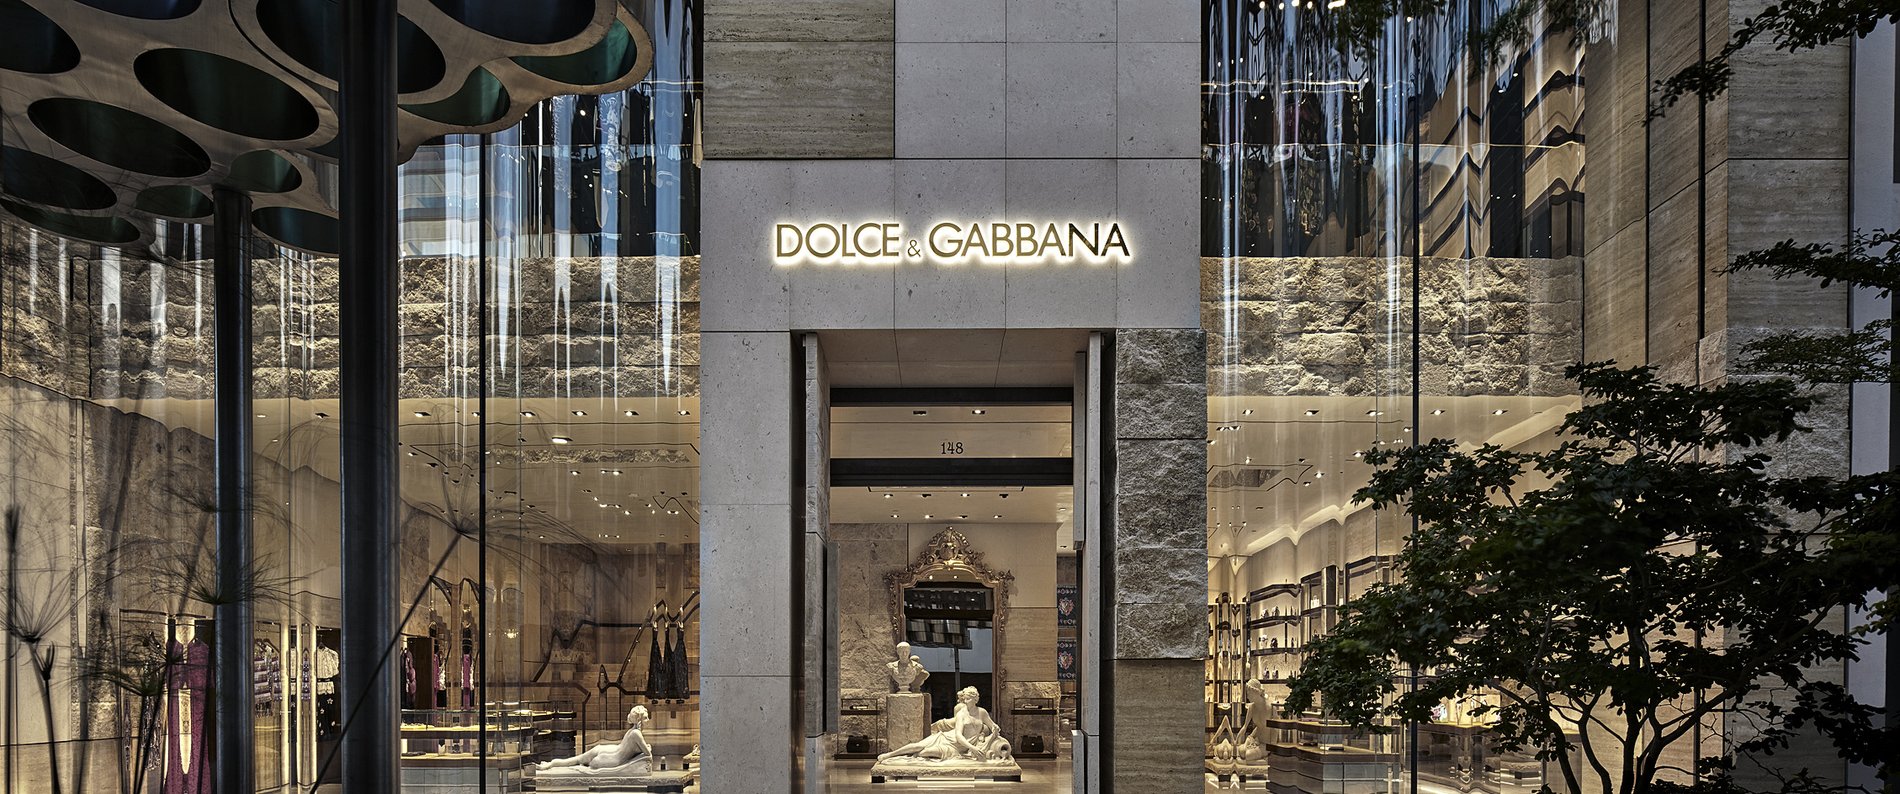 fluctueren moeilijk tevreden te krijgen Intimidatie Dolce & Gabbana at Saint Tropez 17 Rue Francois Sibilli, Saint Tropez